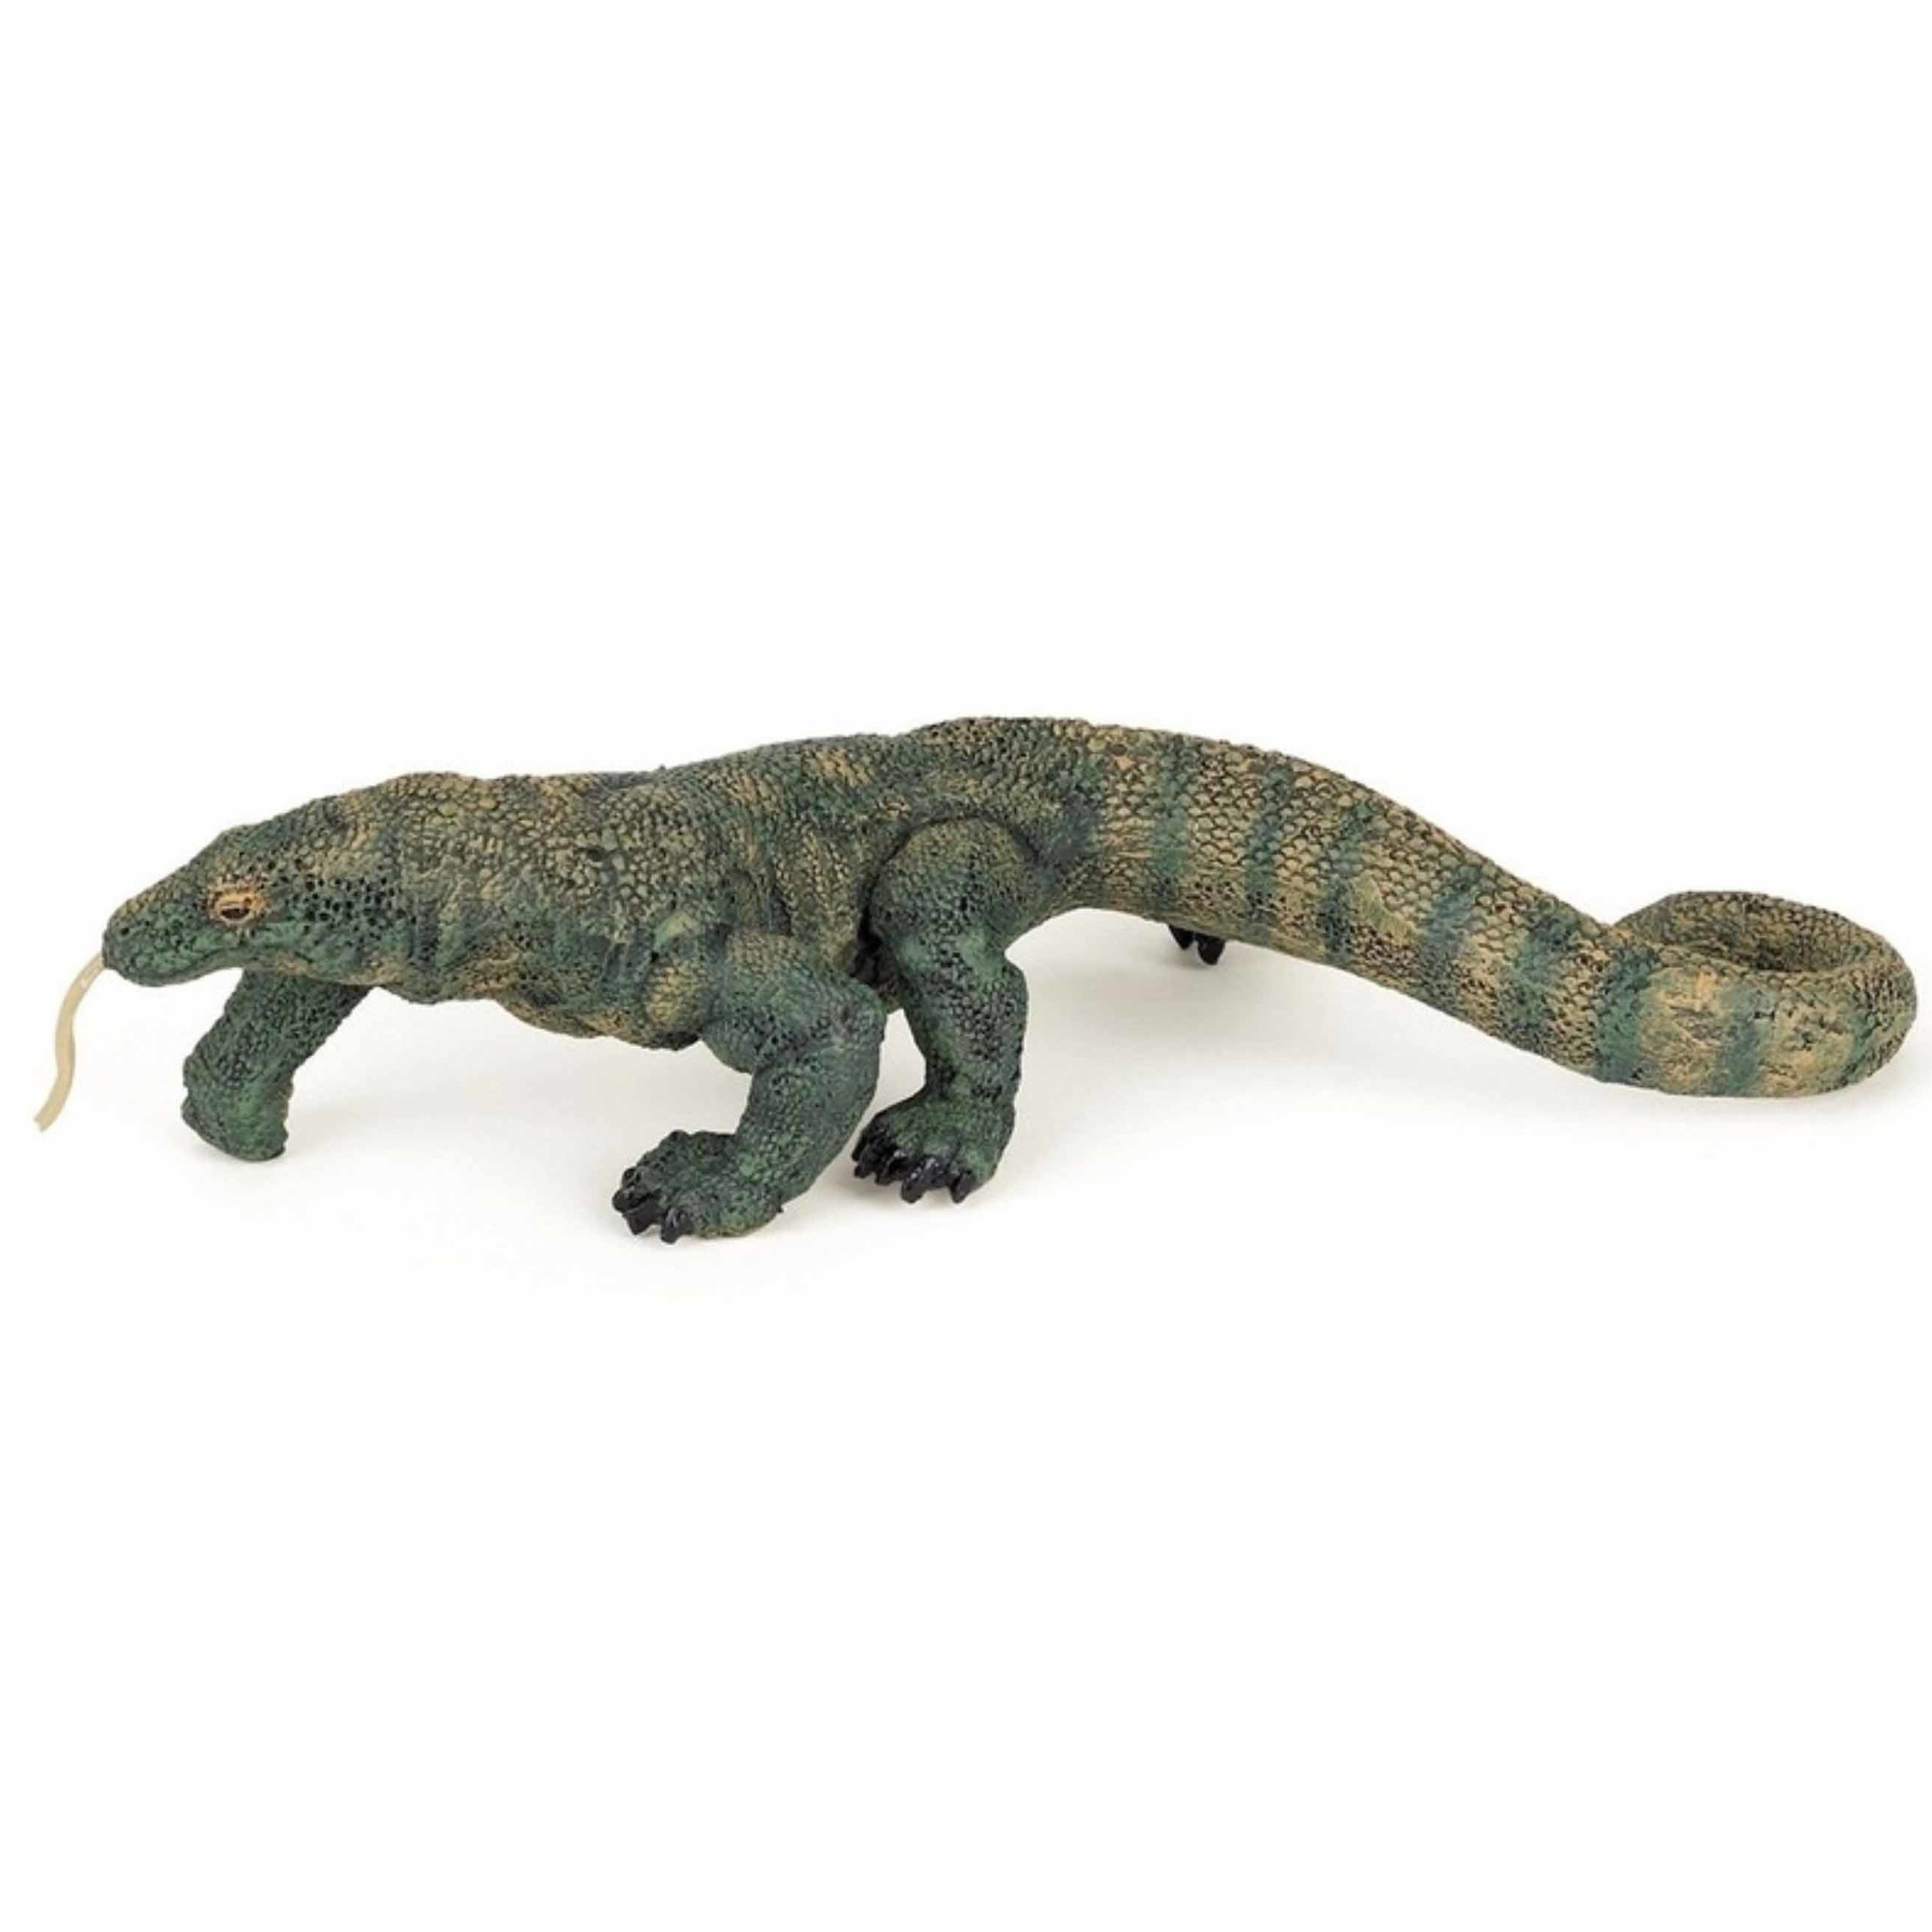 Afbeelding Komodo varaan speeldiertje 16.5 cm door Animals Giftshop